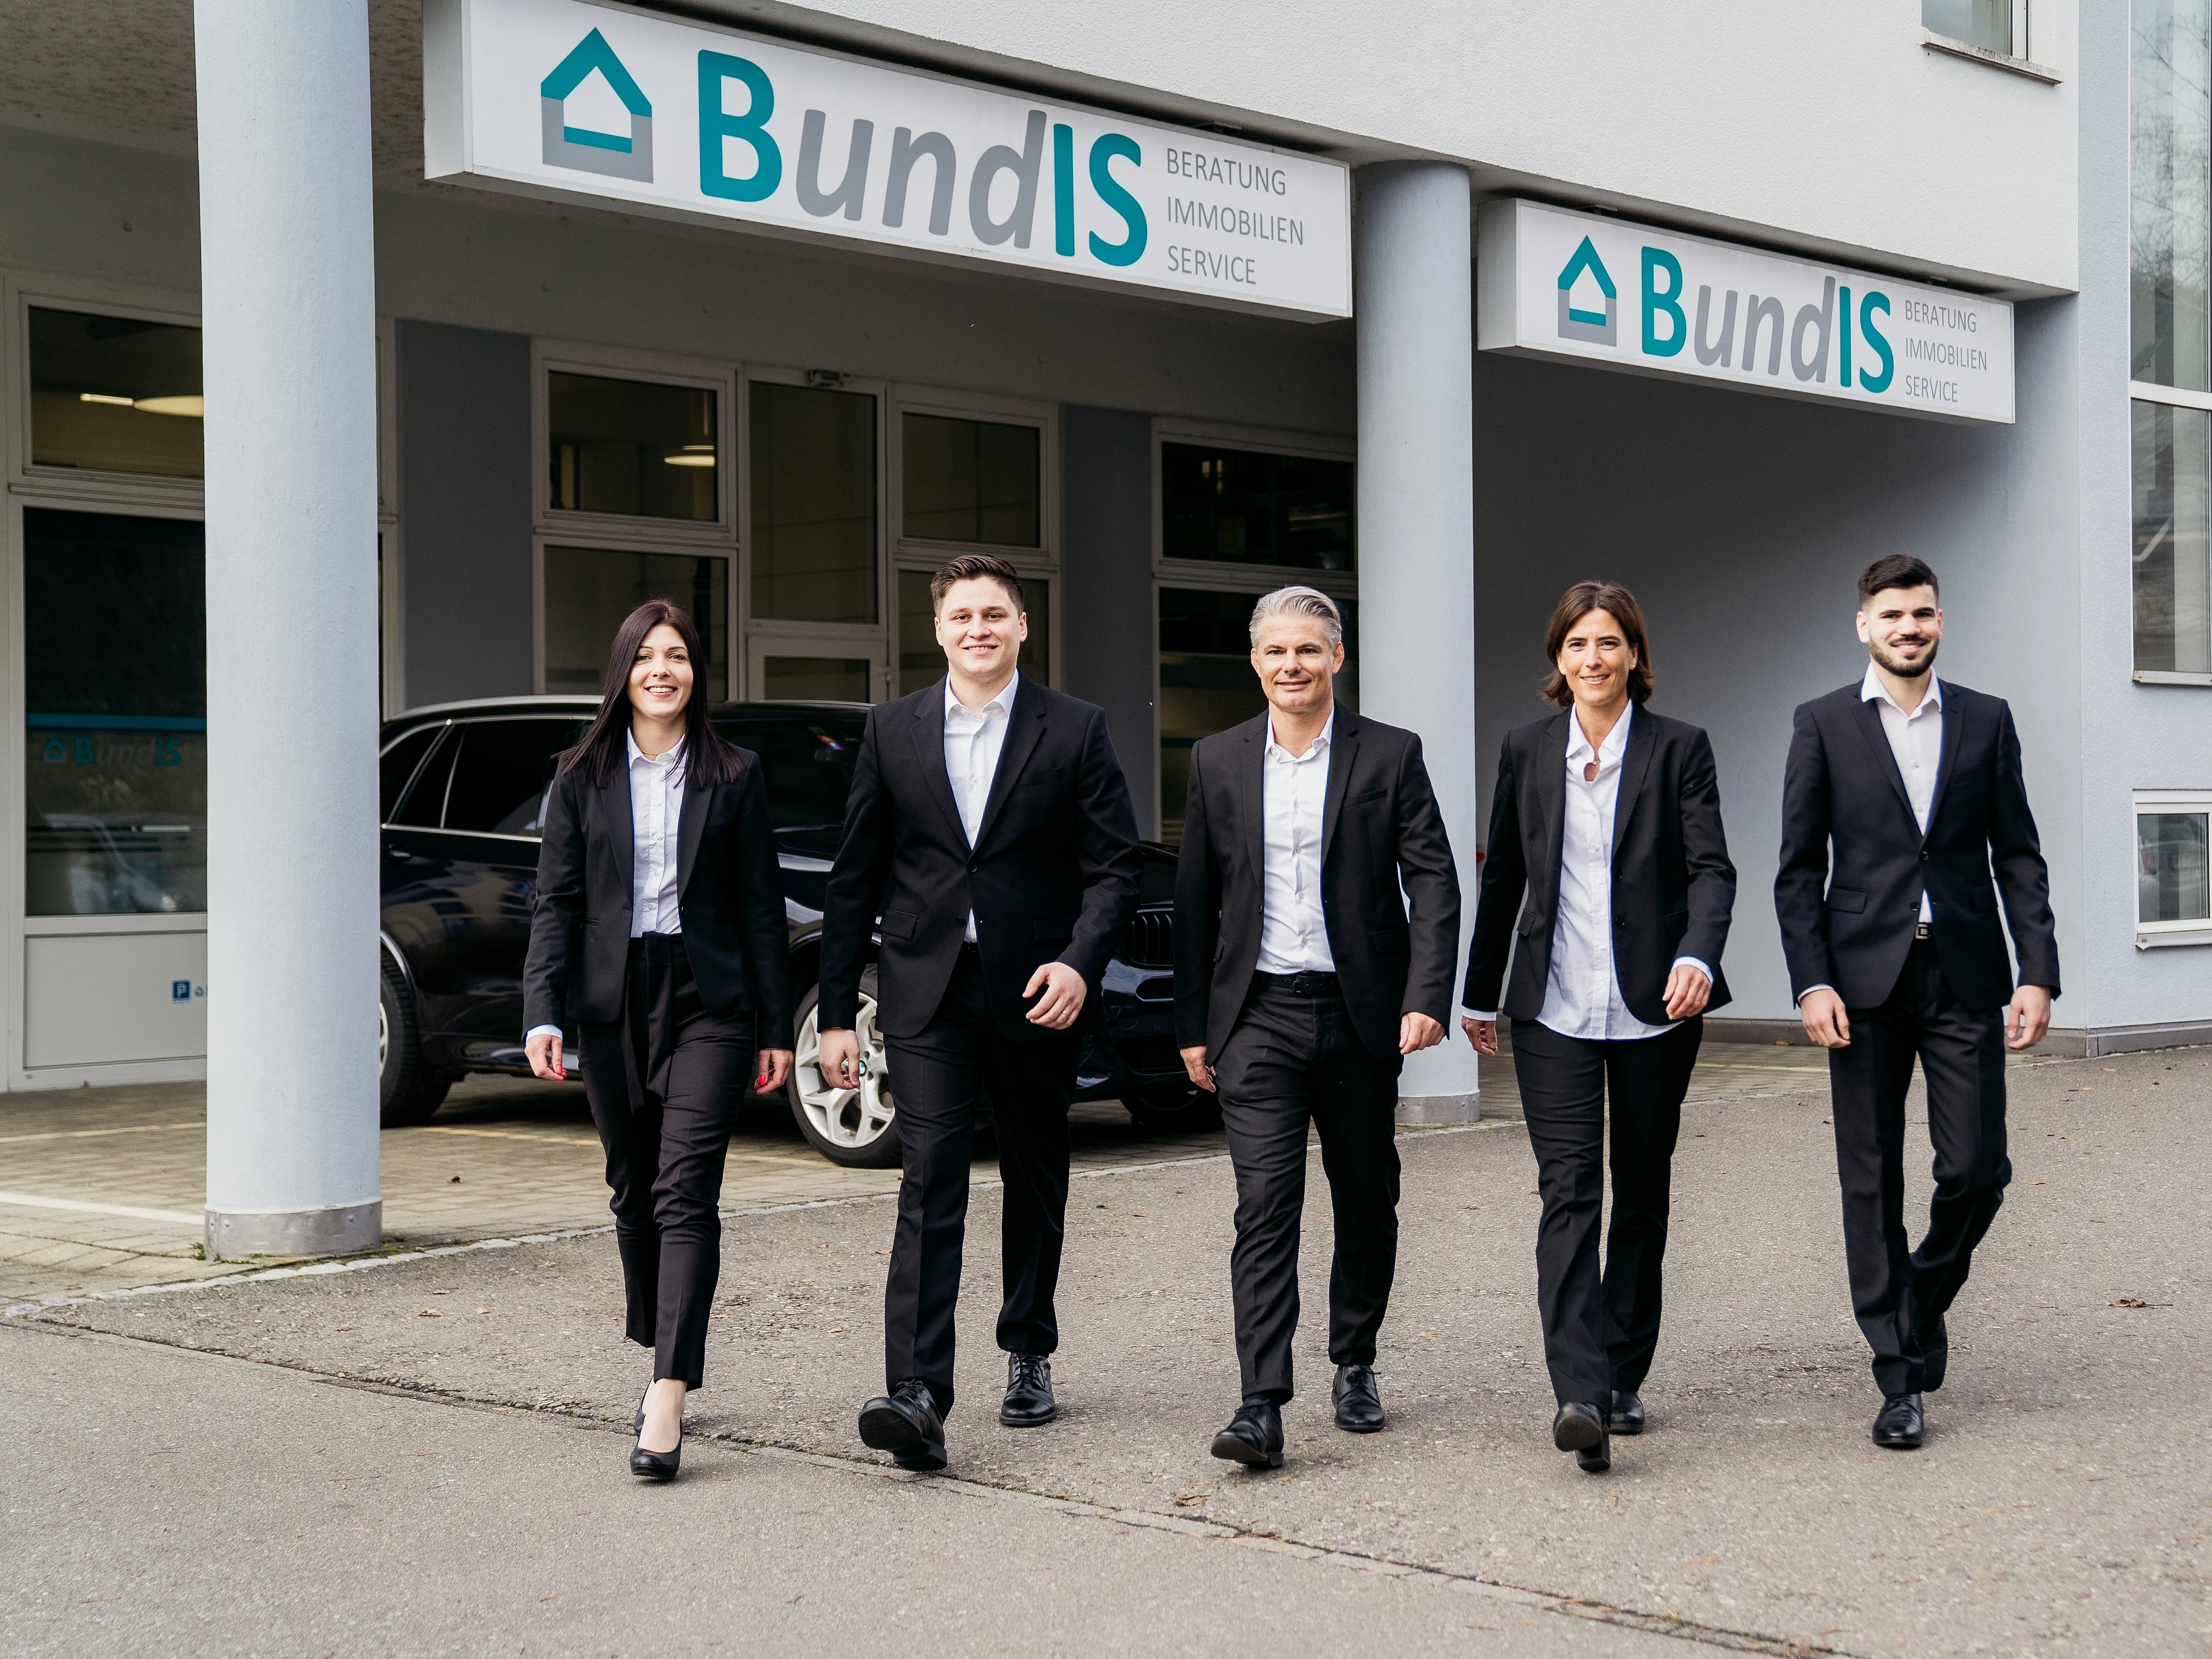 Bundis AG Beratung und Immobilien Service